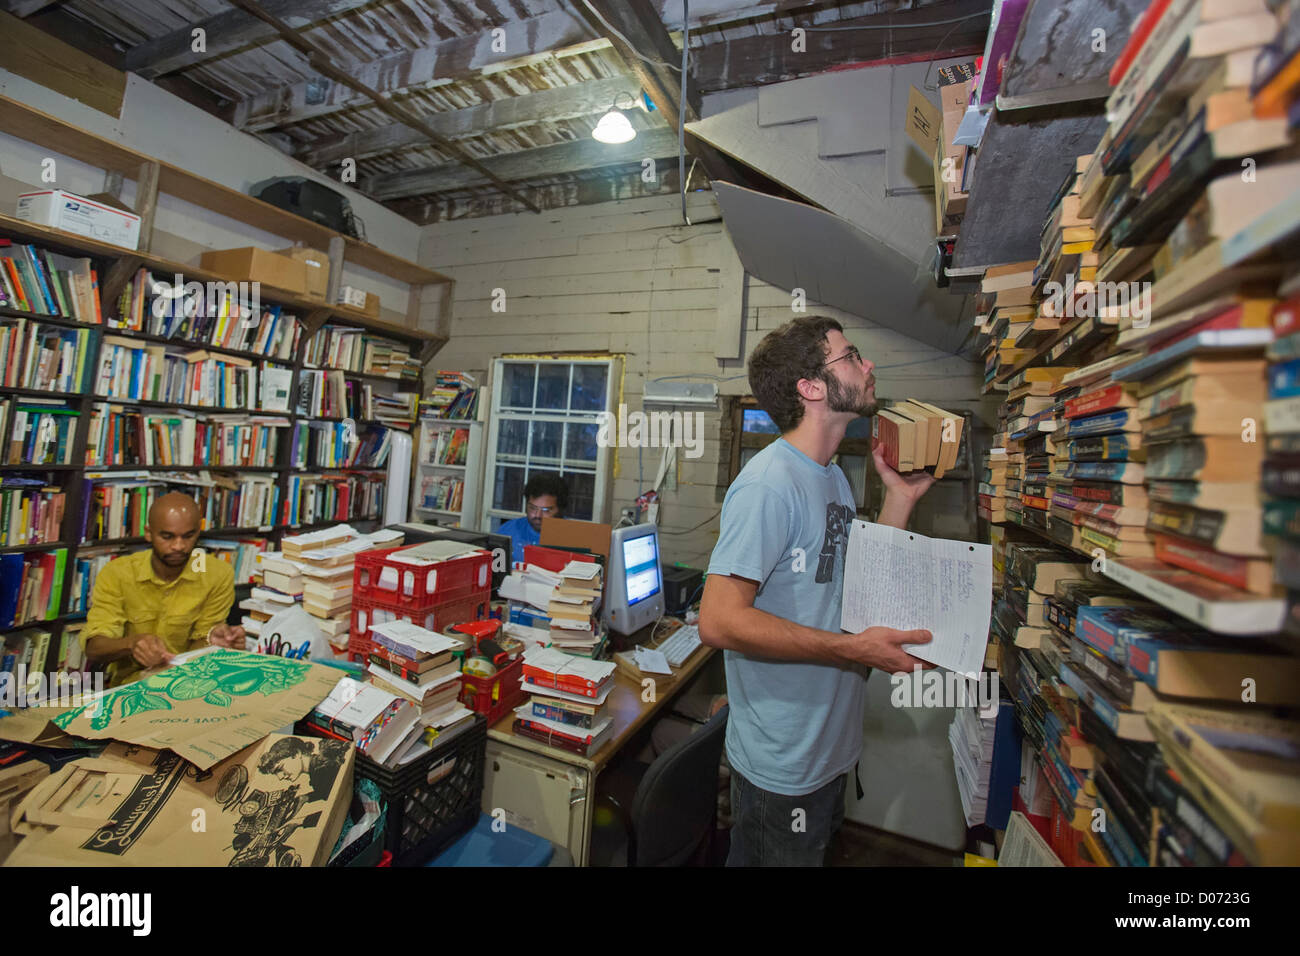 Voluntarios en Louisiana Libros 2 prisioneros seleccionar libros para enviar a los presos. Foto de stock